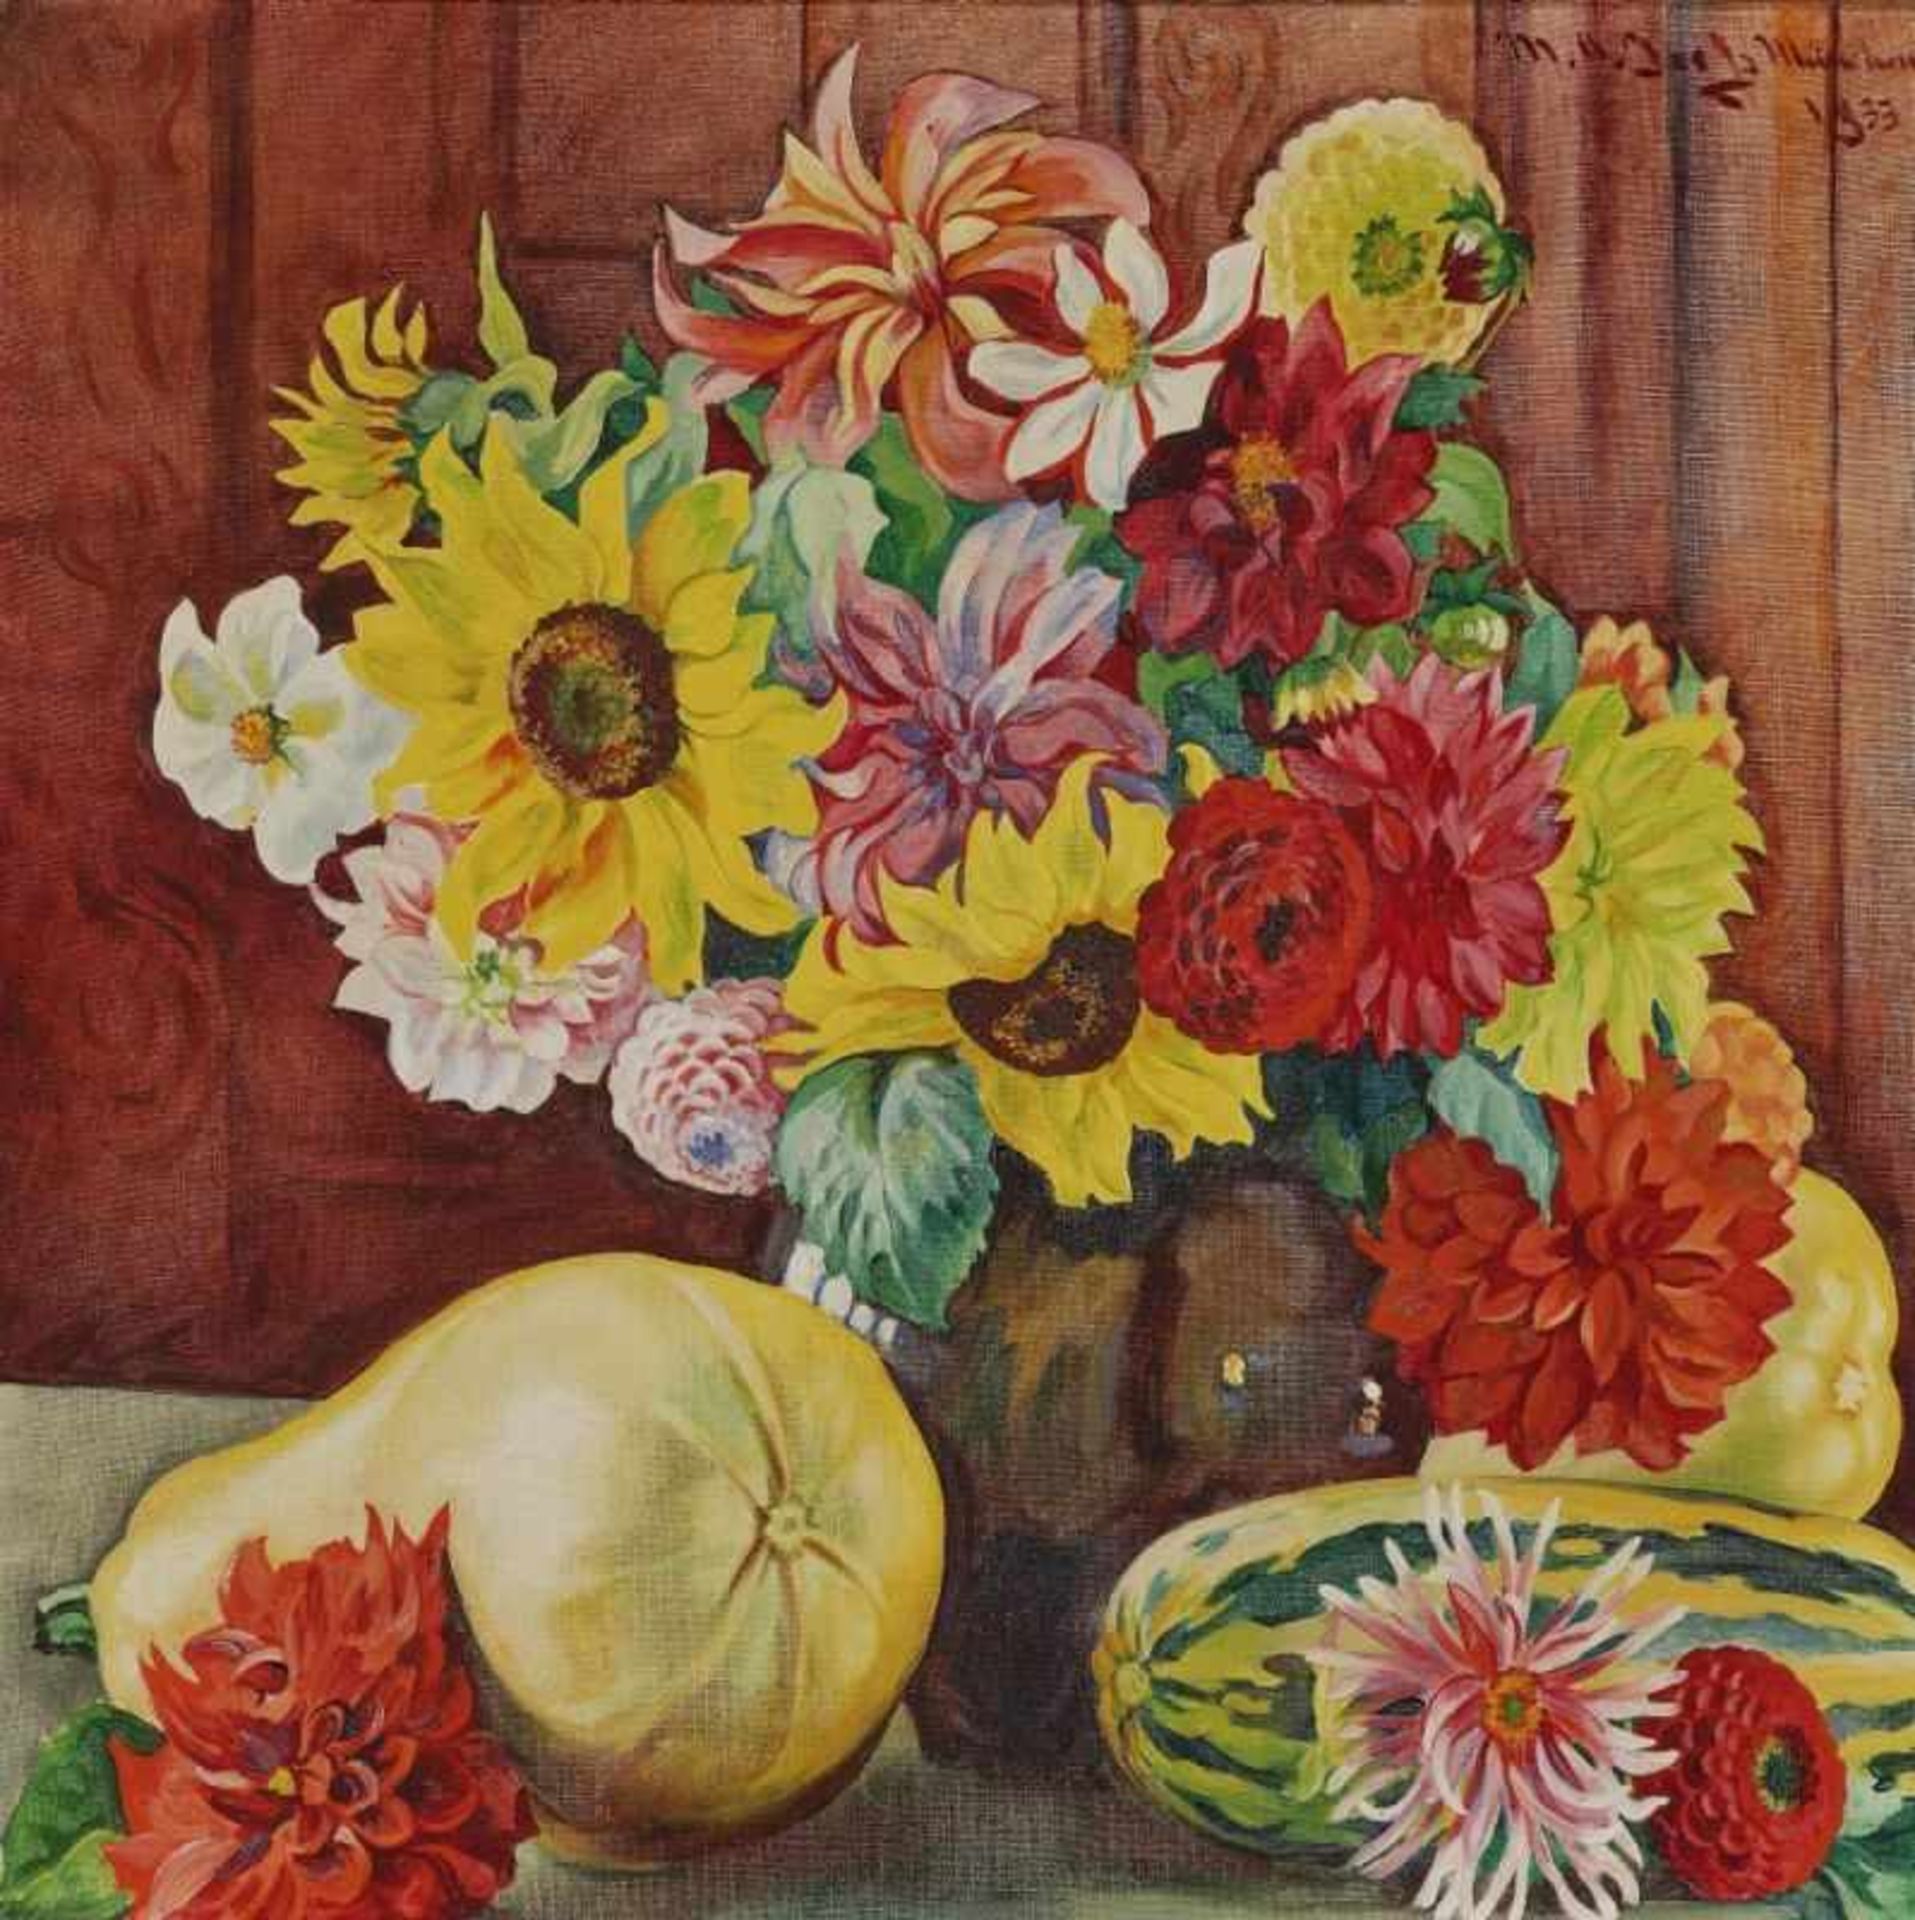 Jooß, Melanie Alice 1883 Stuttgart - 1940 München Stillleben mit Dahlien, Sonnenblumen und Kürbissen